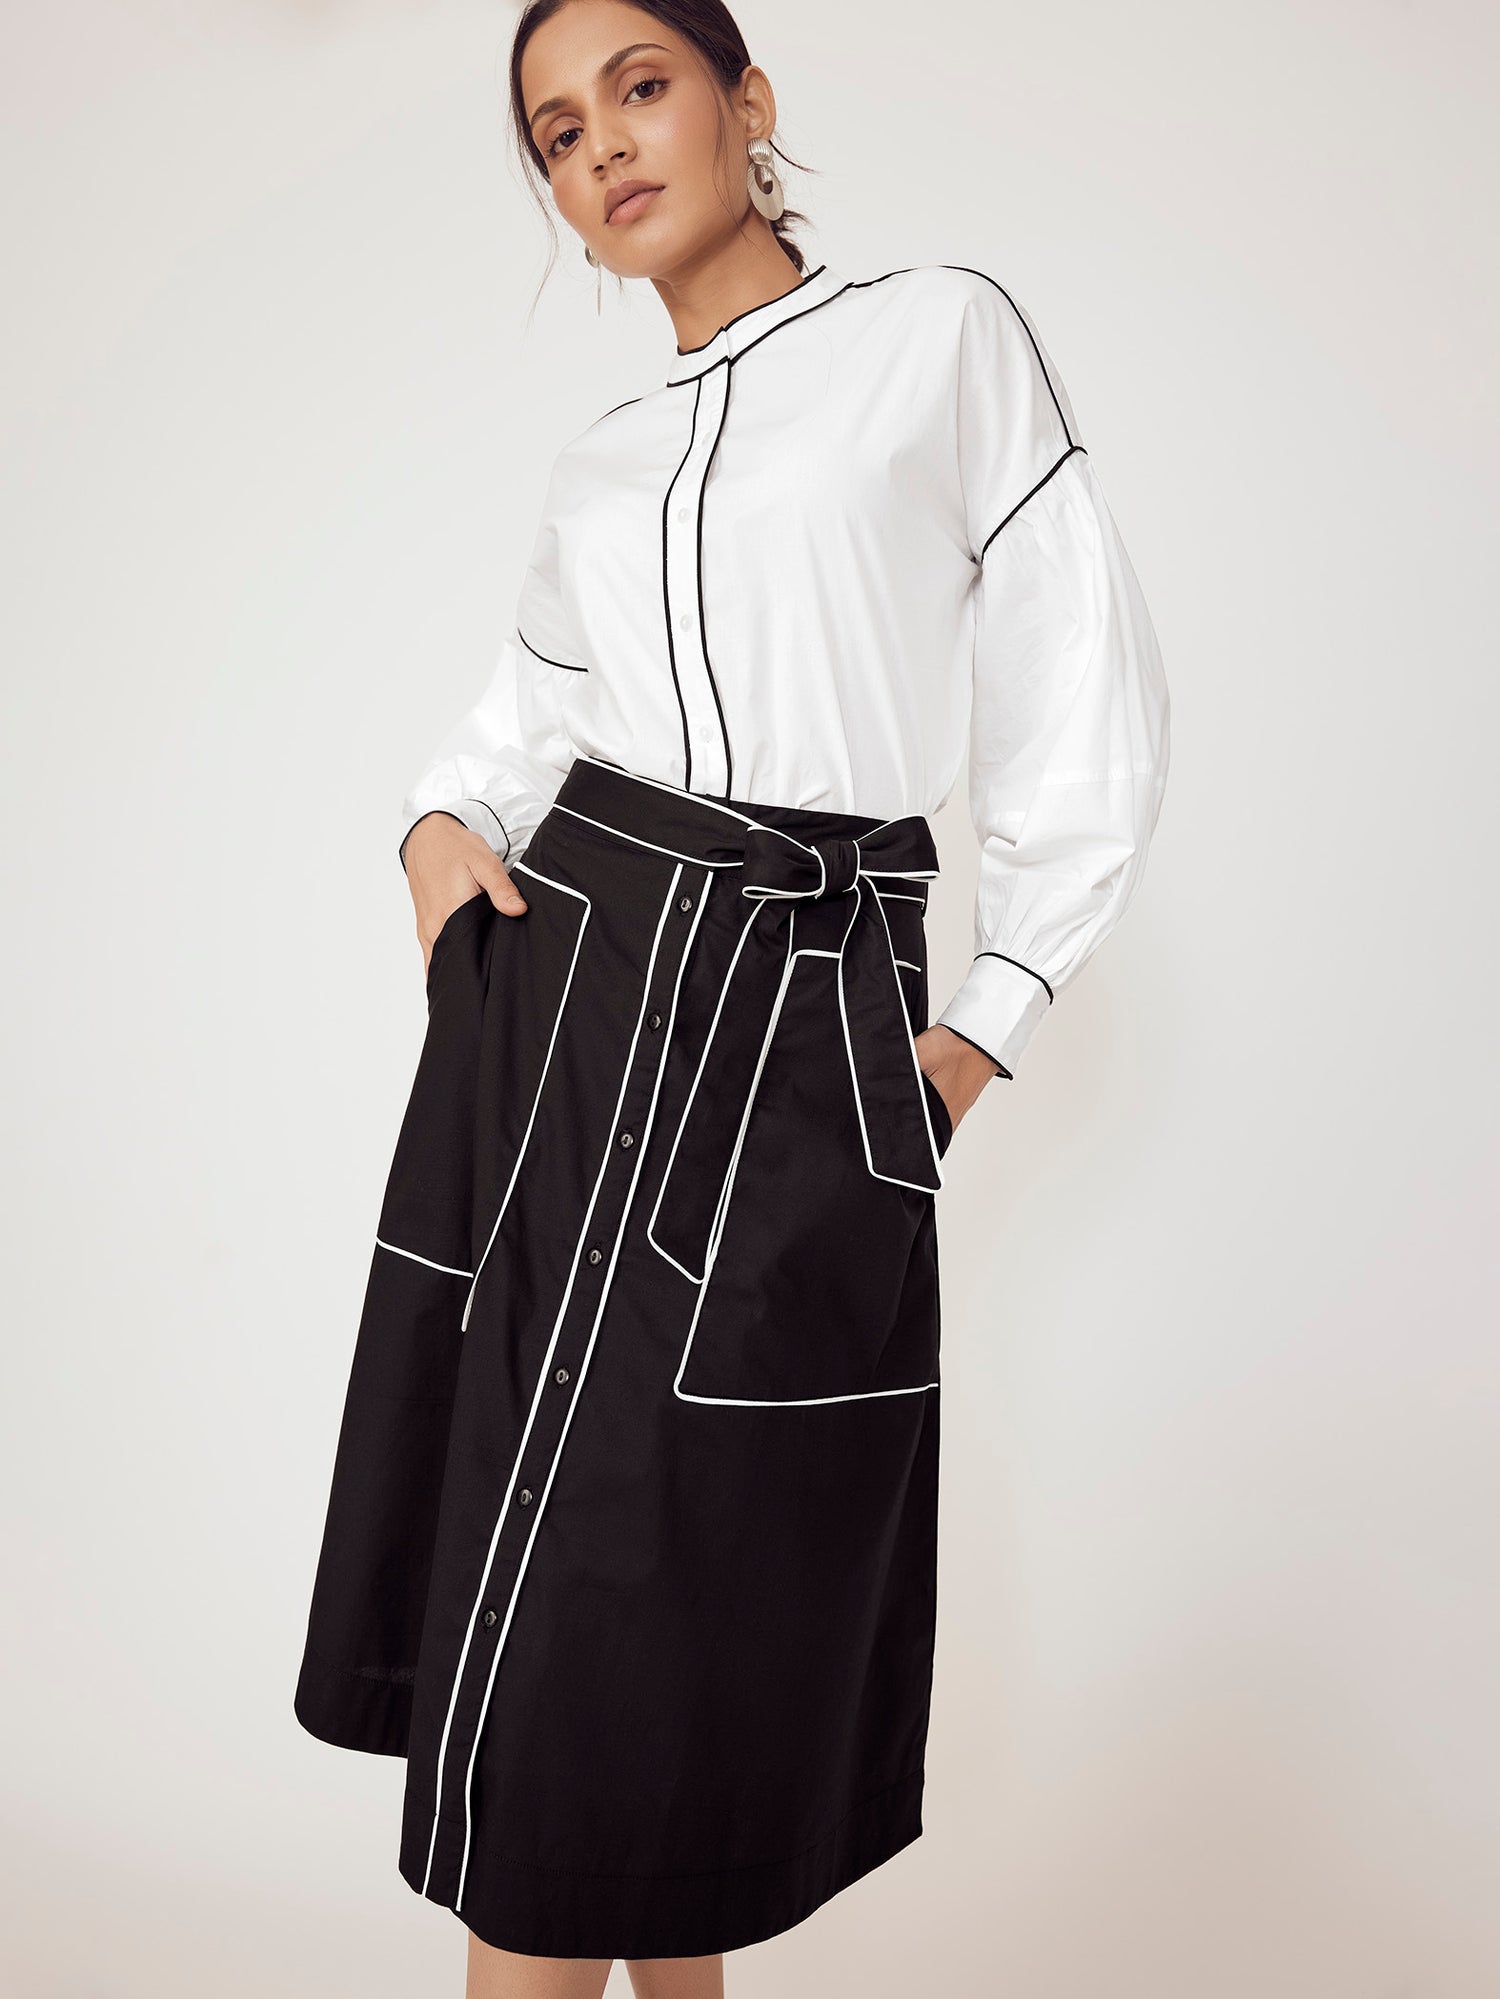 Black & White Pocket Skirt